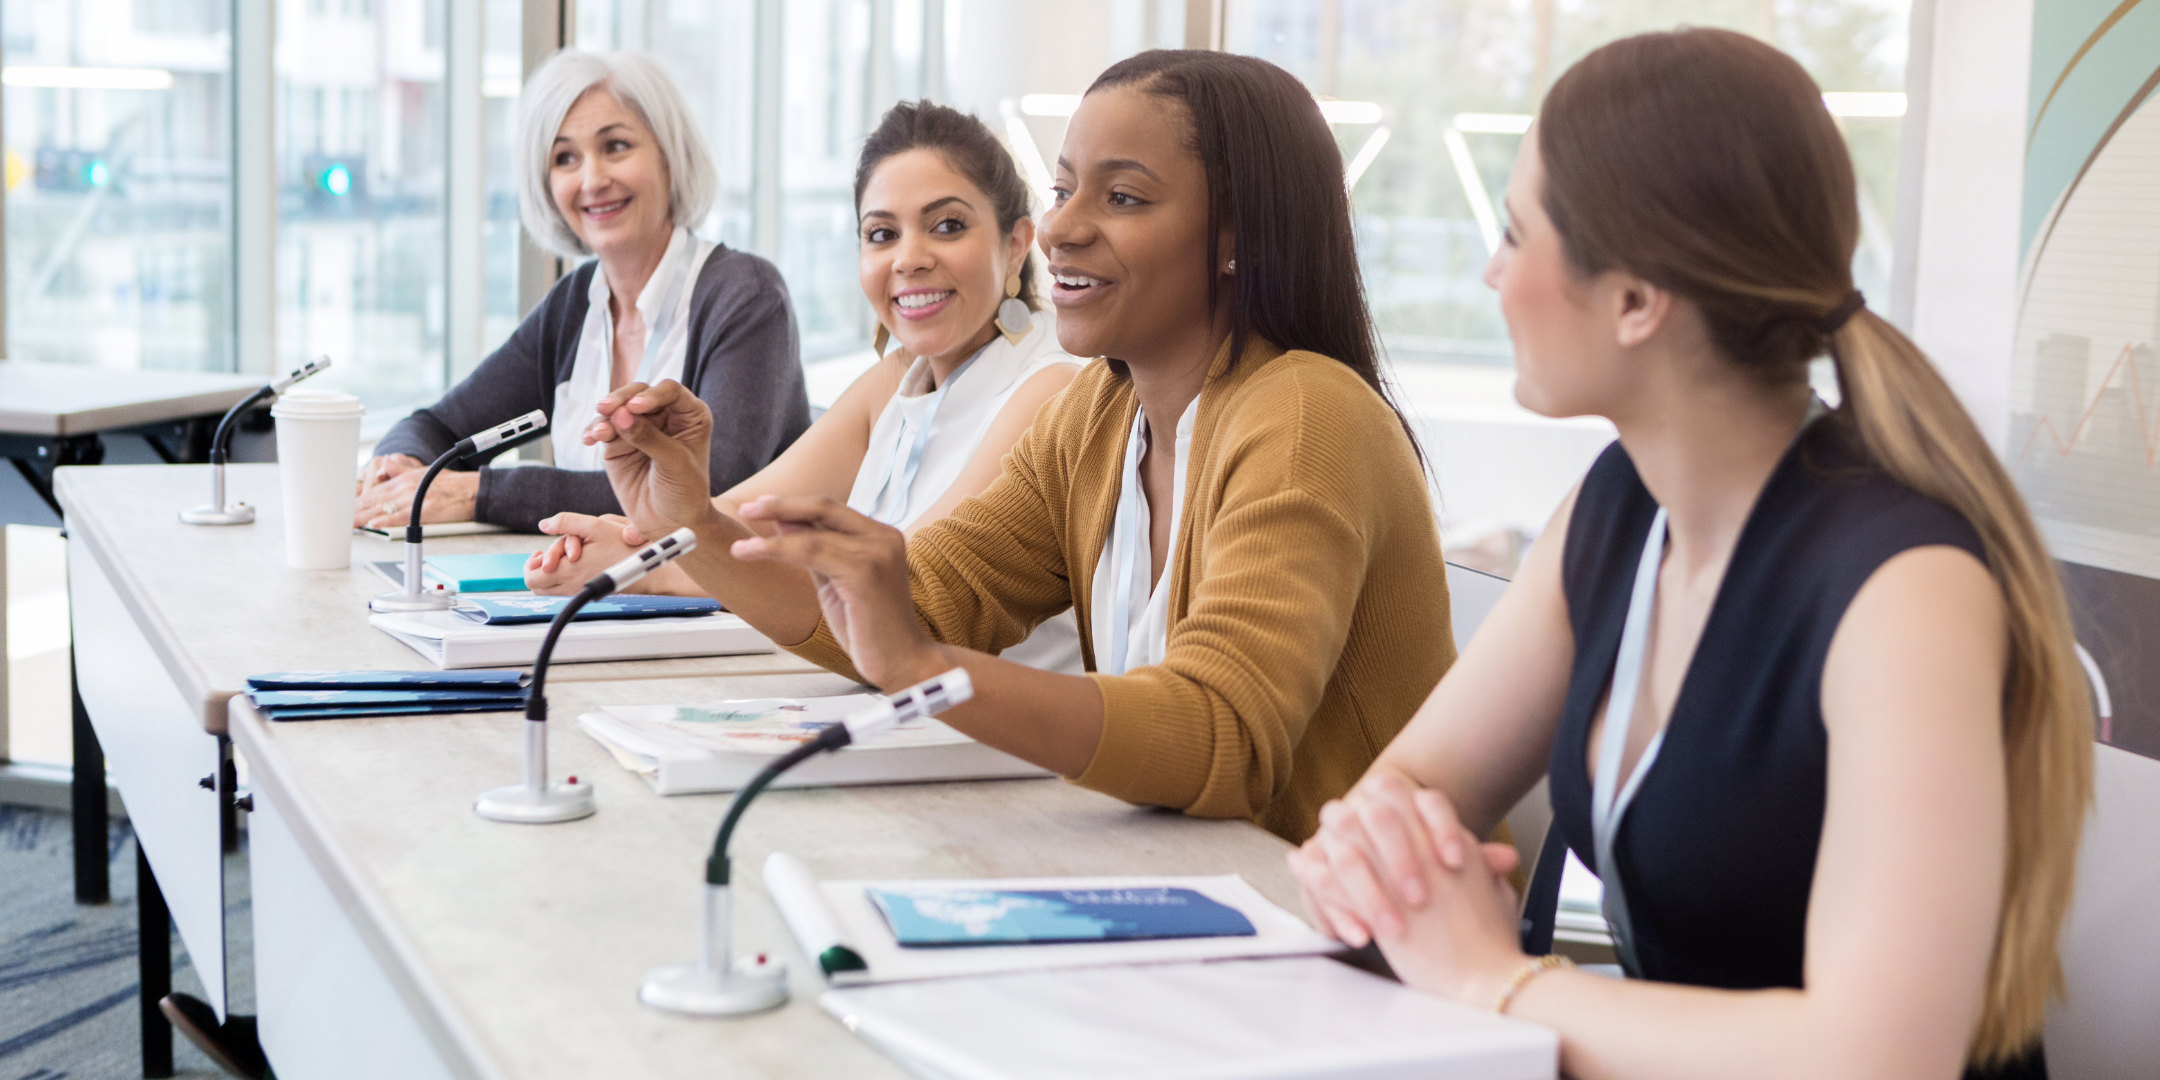 September Women in Leadership Roundtable